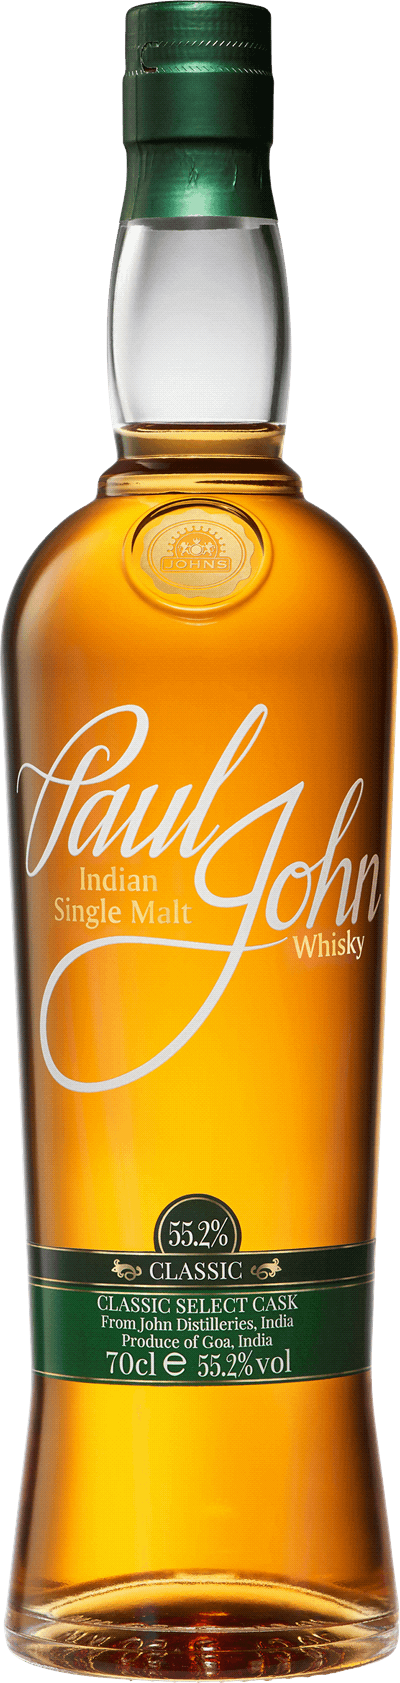 Paul John Classic Select Cask